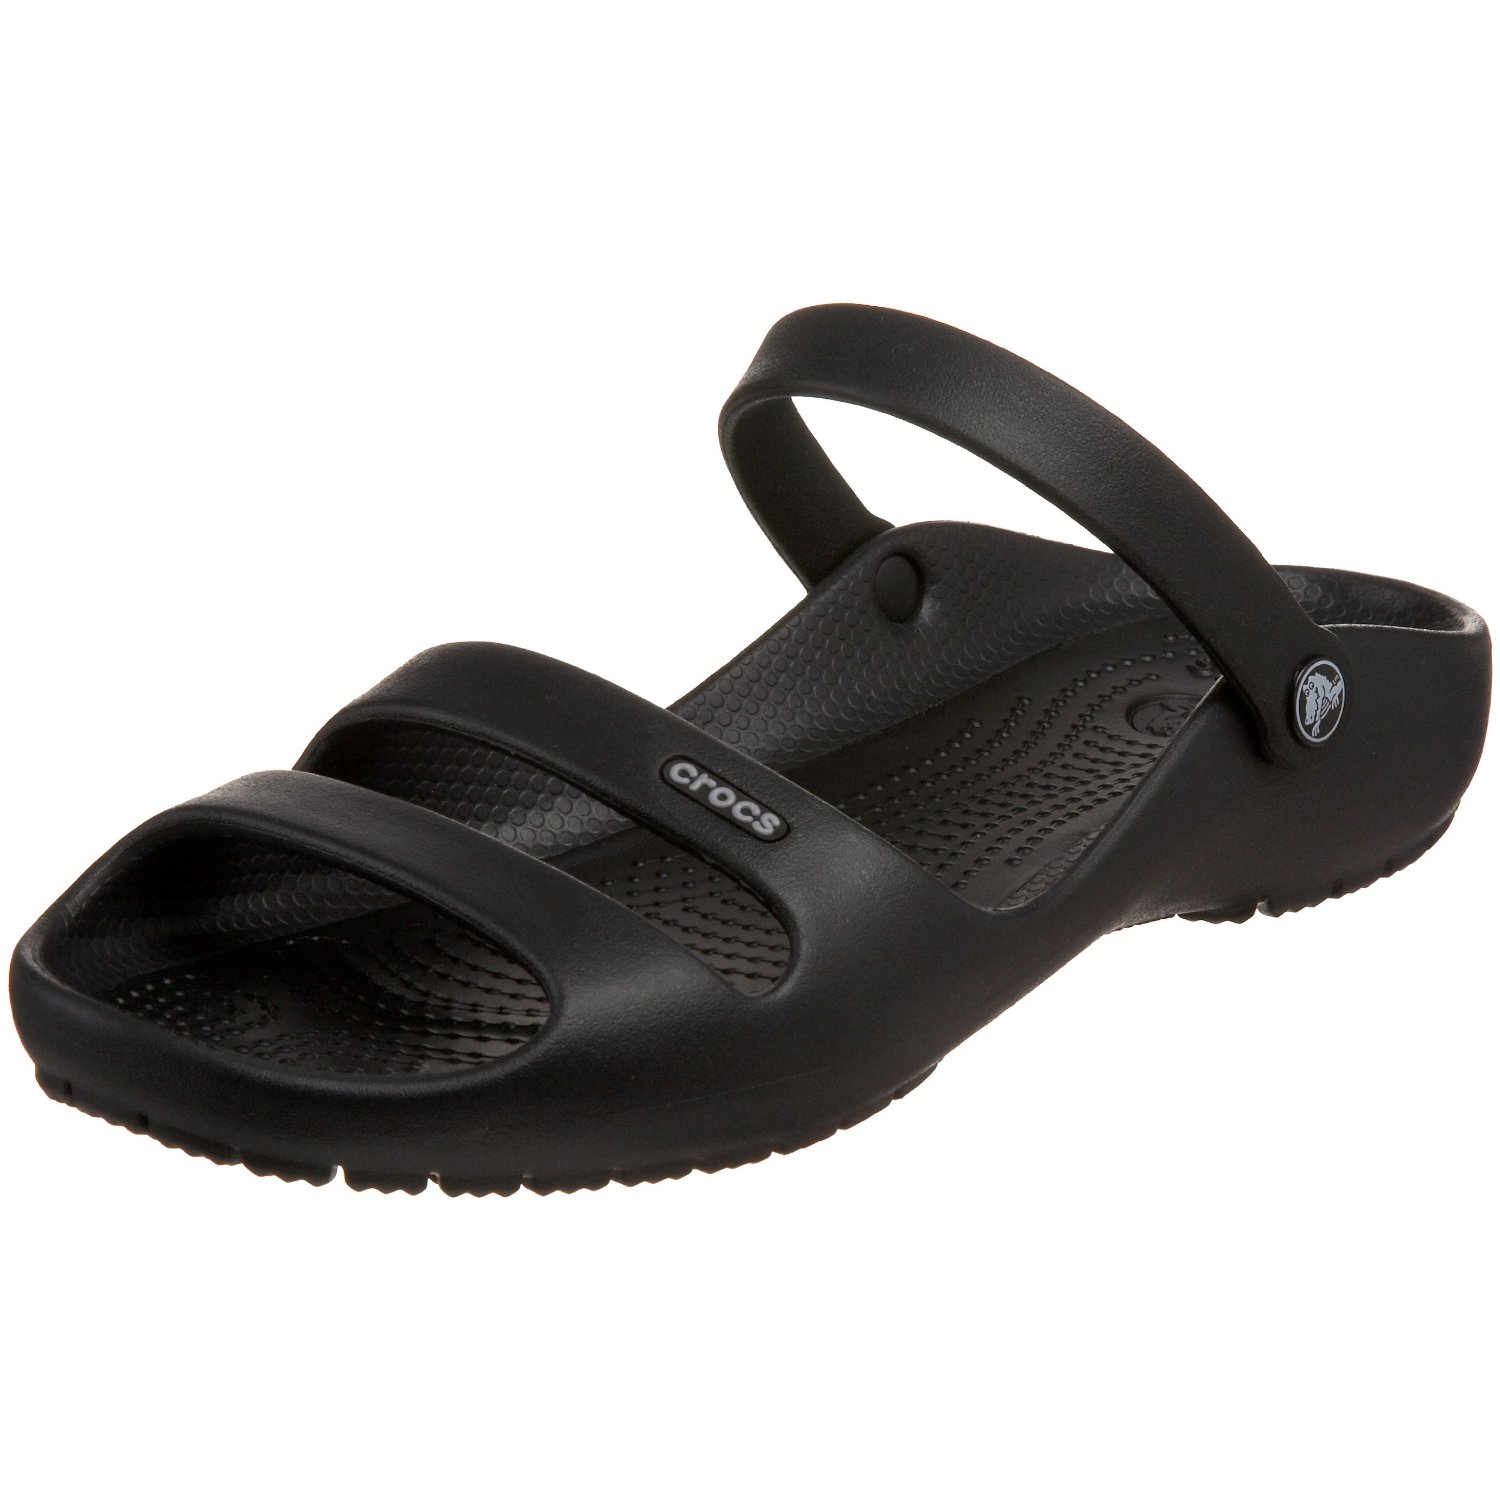  Crocs  Shoes Crocs  Women s Cleo  II Slingback Sandal